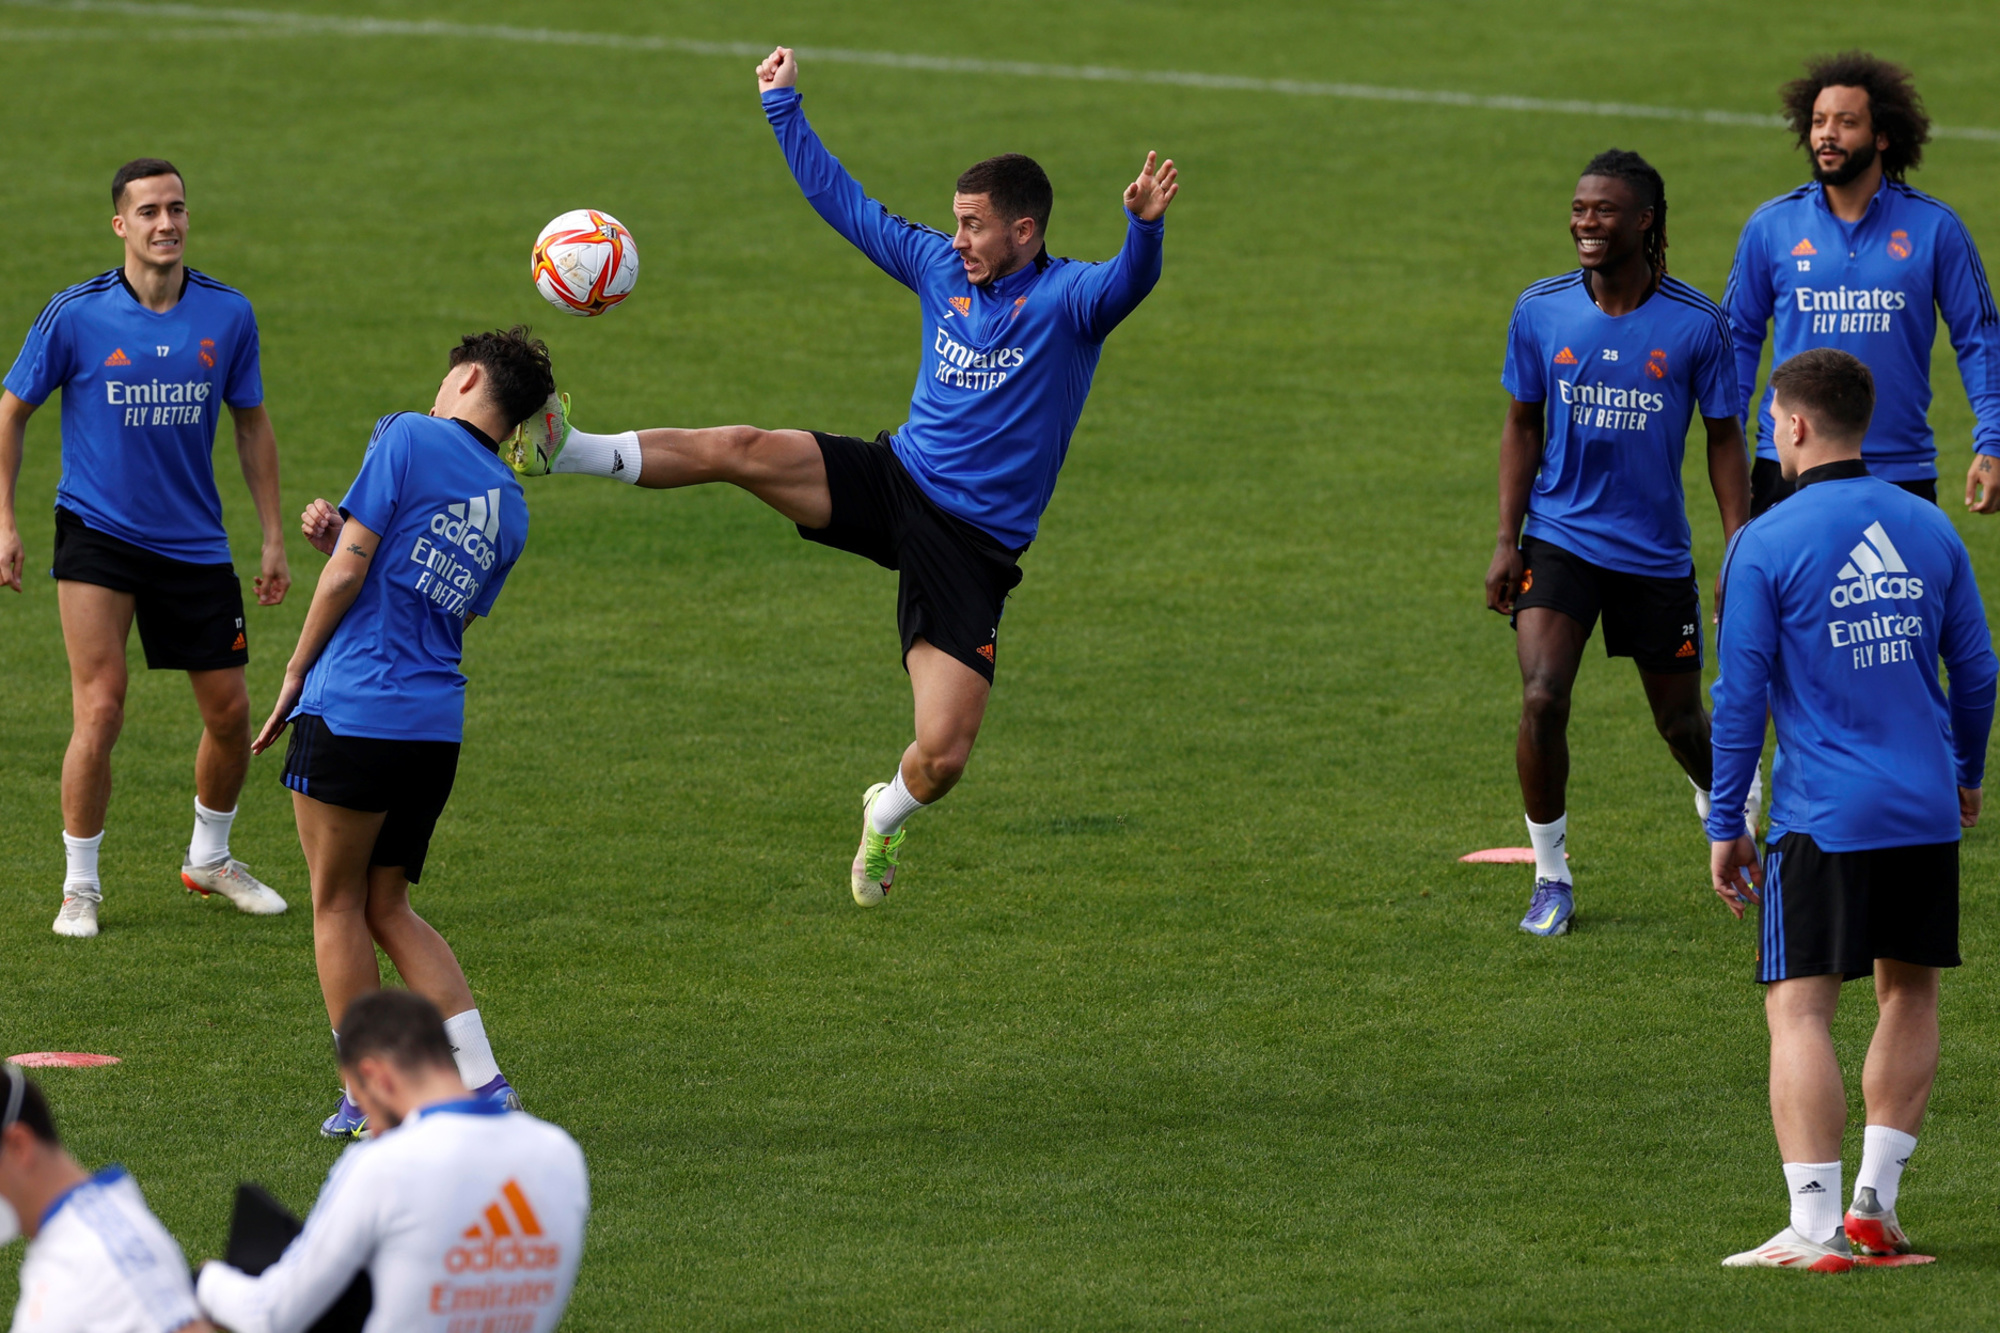 Eden Hazard donne pourtant le meilleur de lui-même à l'entraînement pour mettre ses concurrents au tapis., belga